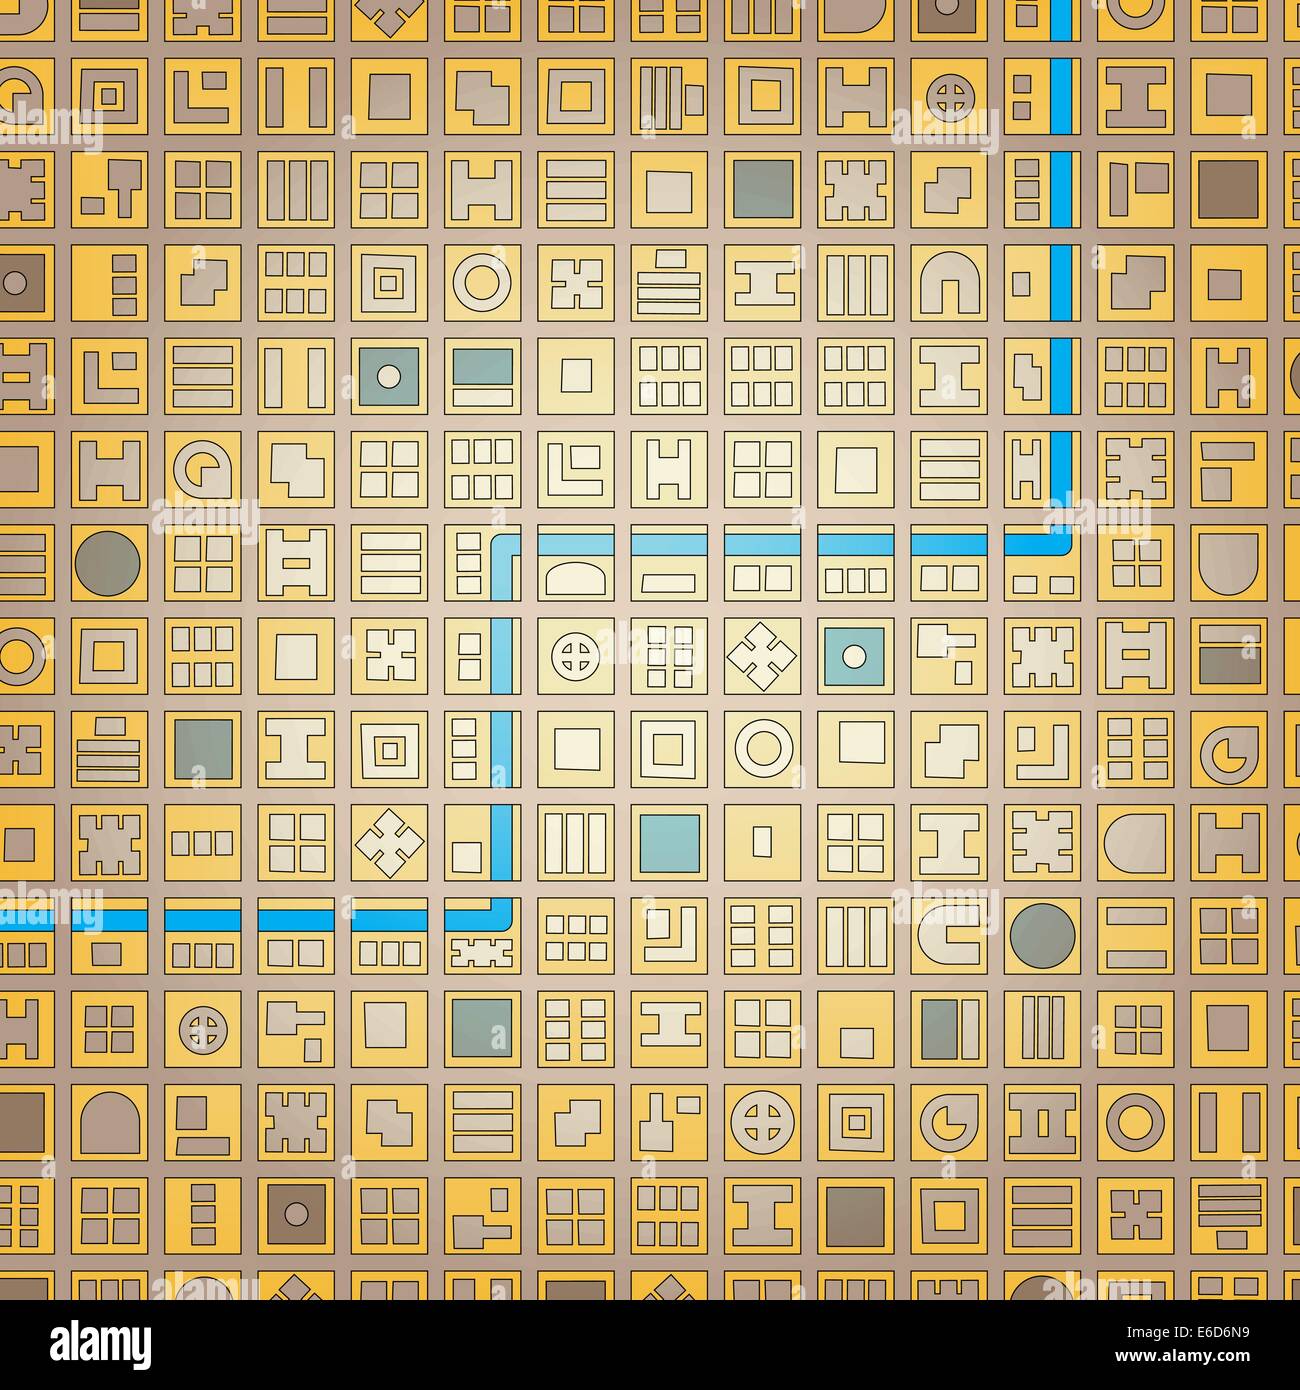 Abstract vettoriale modificabile mappa stilizzata di una generica città in un modello a griglia Illustrazione Vettoriale